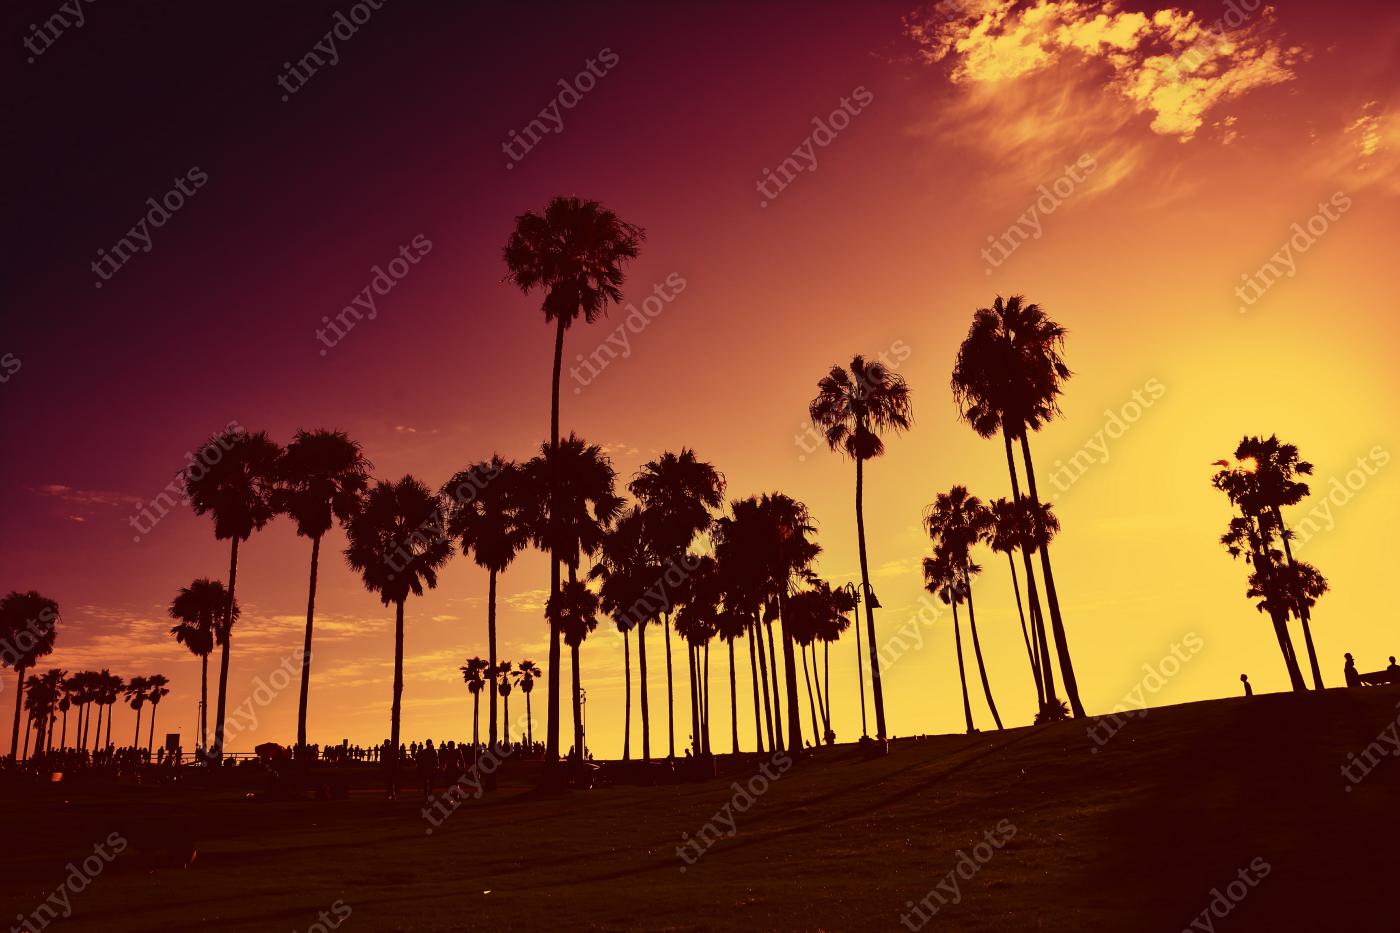 Obraz na pleksi Zachód słońca na Venice Beach, Kalifornia, USA.